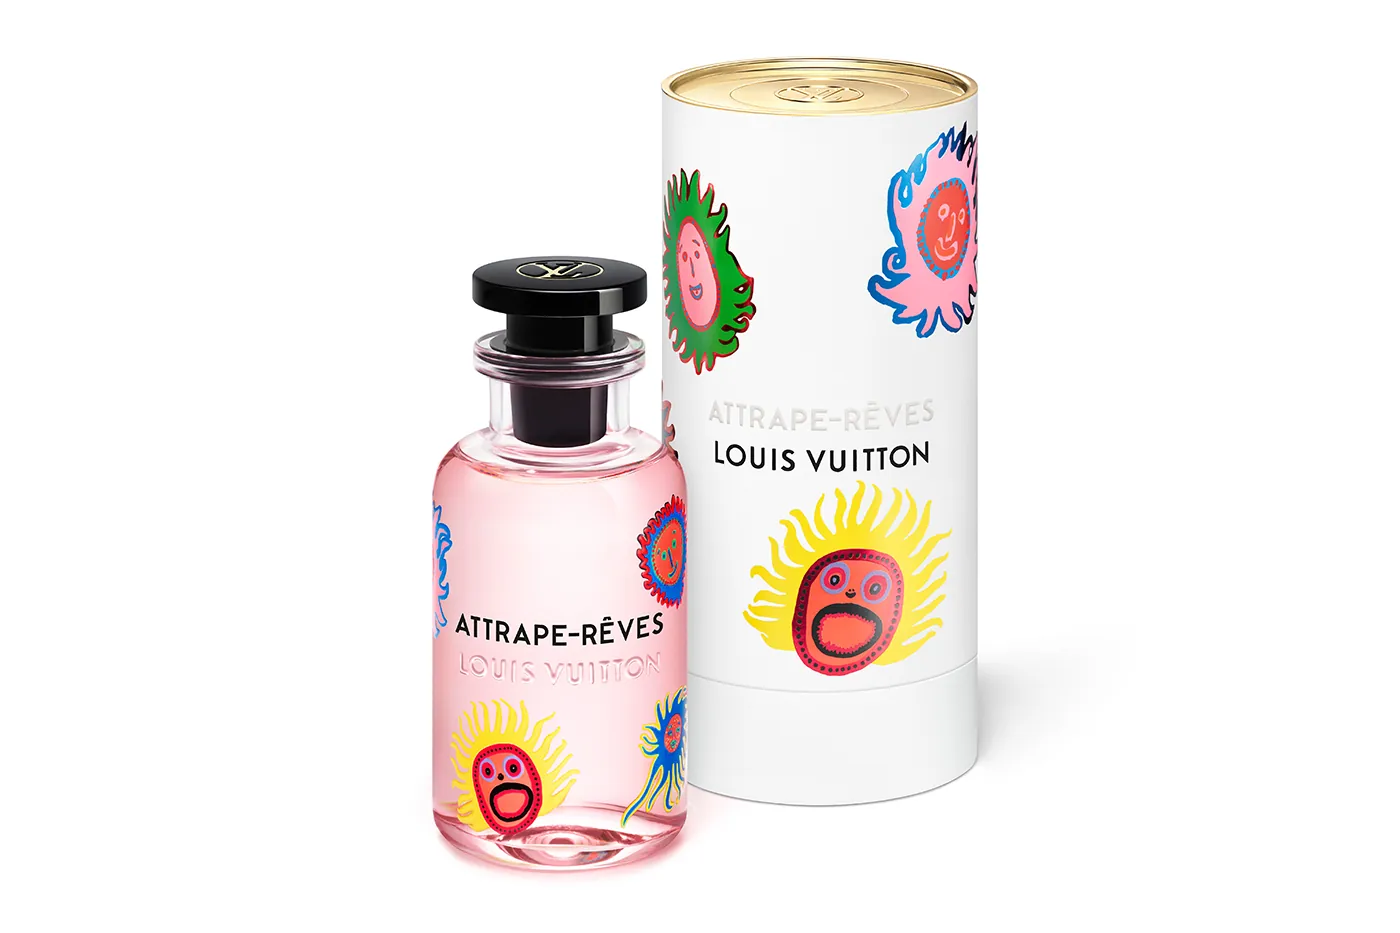 Louis Vuitton I Yayoi Kusama powraca z współpracą zapachu